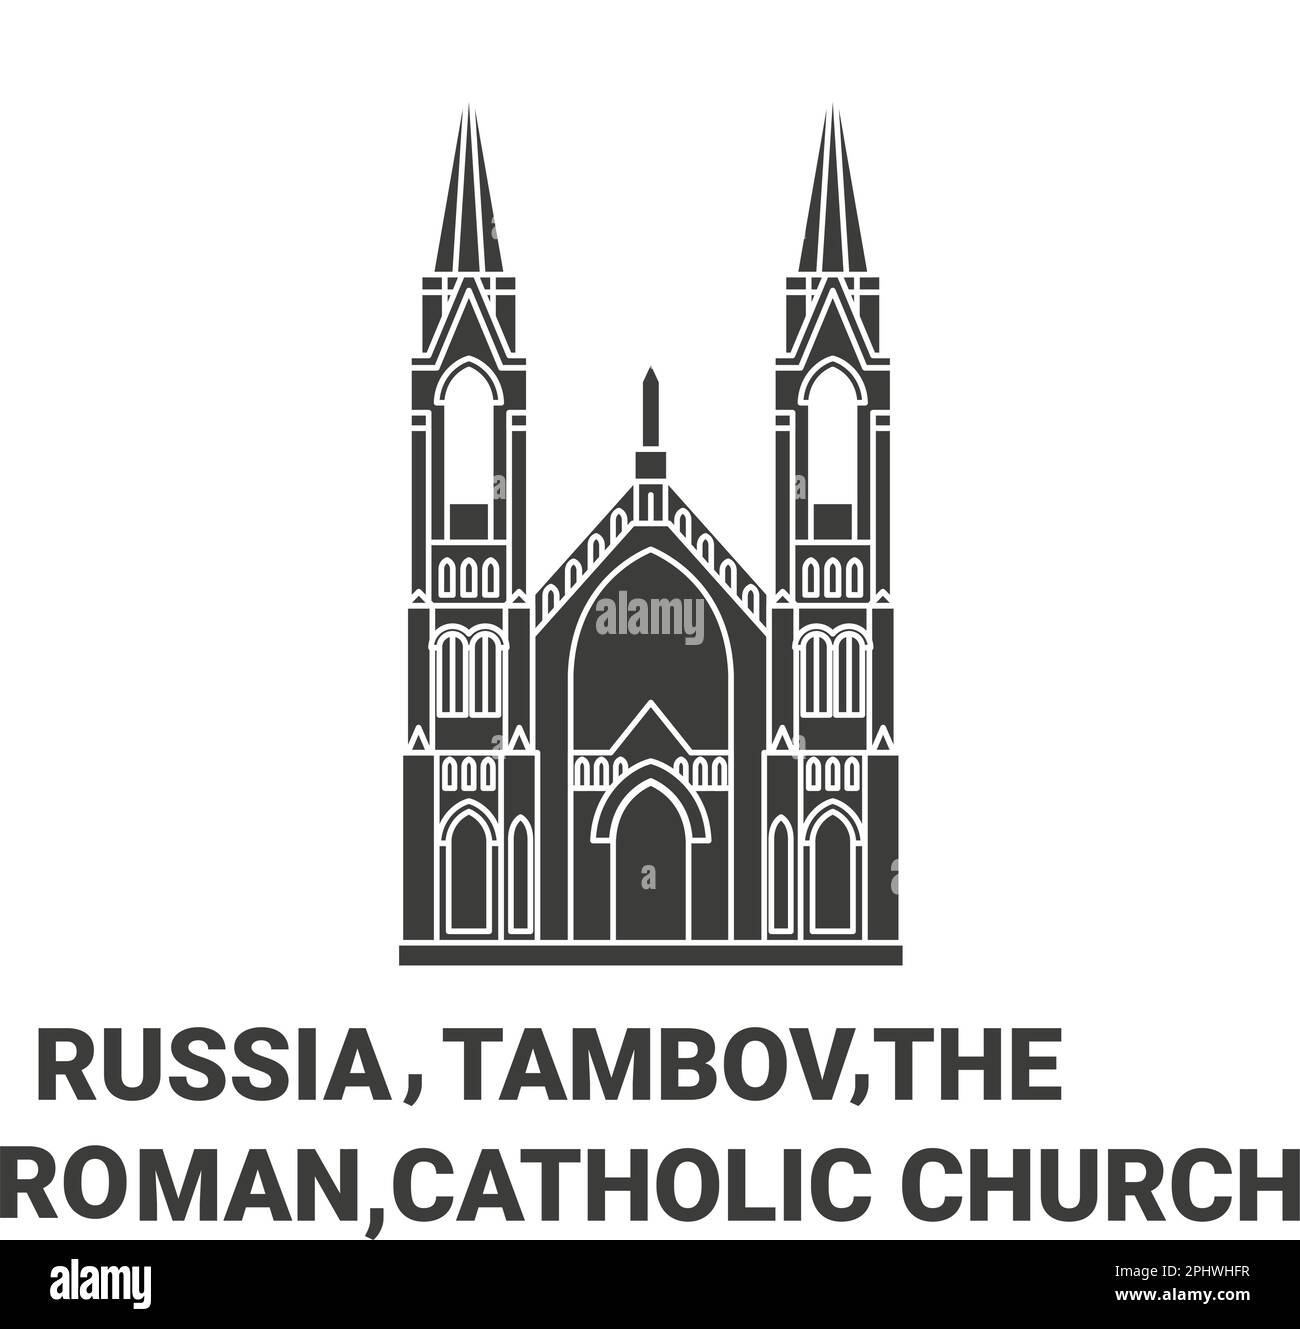 Russia, Tambov,The Roman, Catholic Church In Tambov travel landmark vector illustration Stock Vector